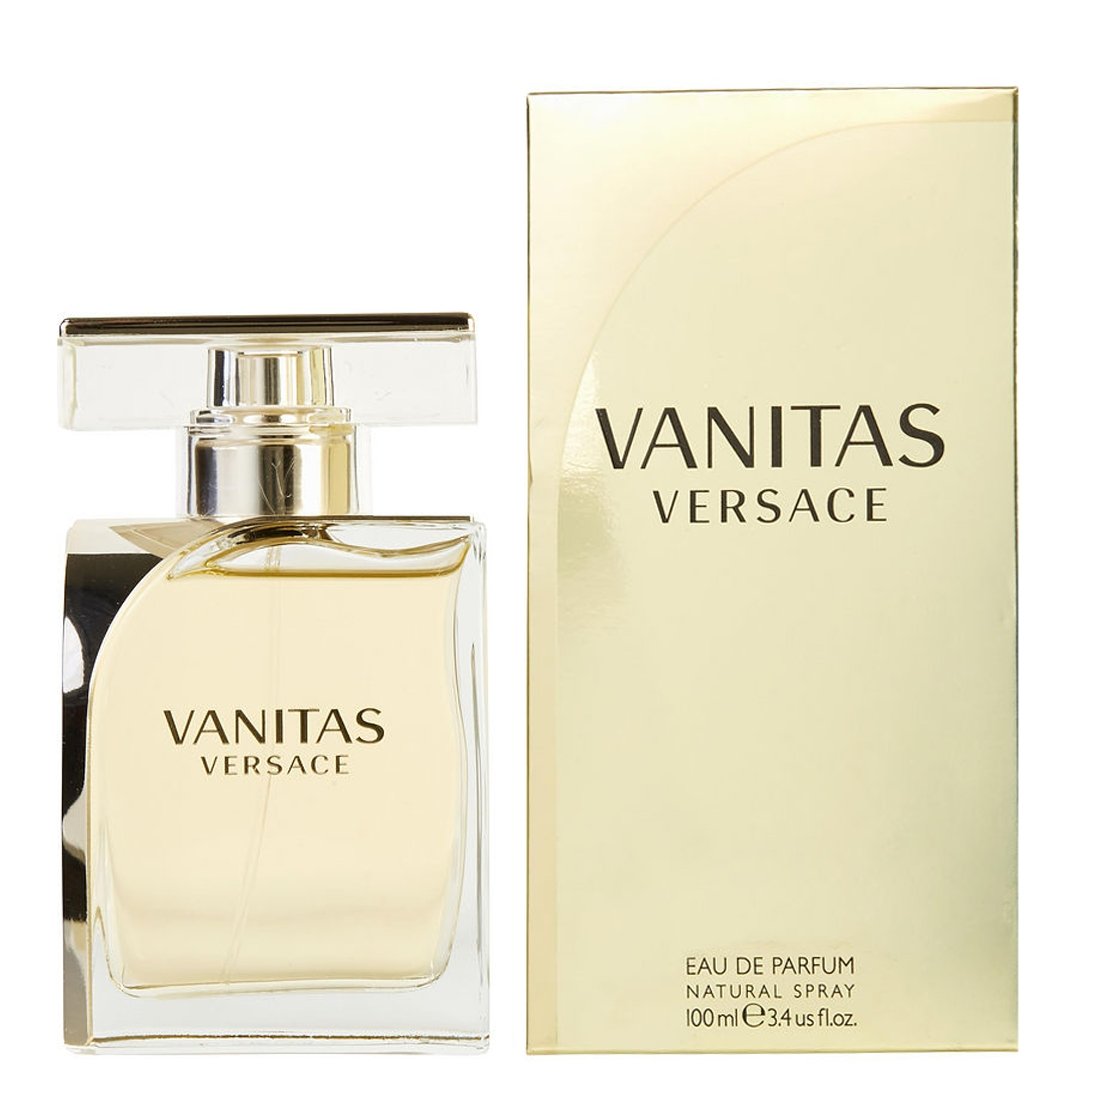 Vanitas For By Versace Eau Parfum Buy Now - Needs